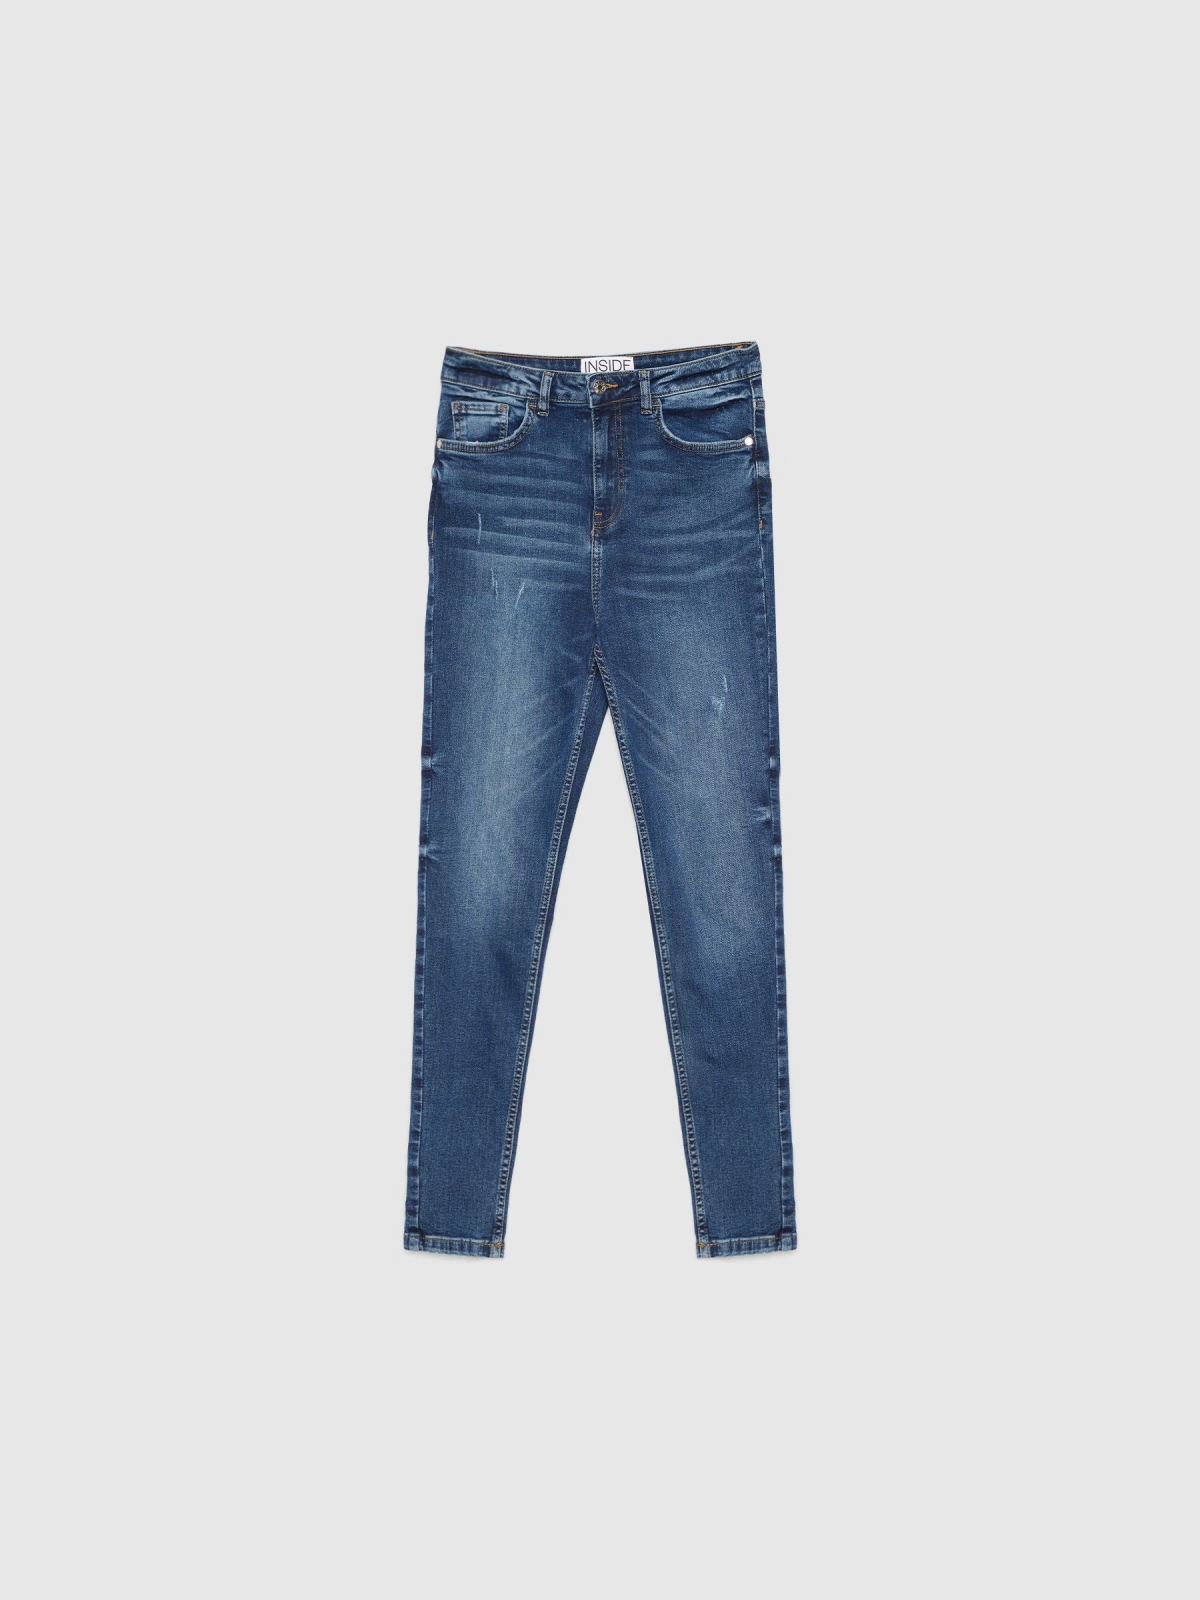  Jeans skinny de cintura alta desgaste azul escuro